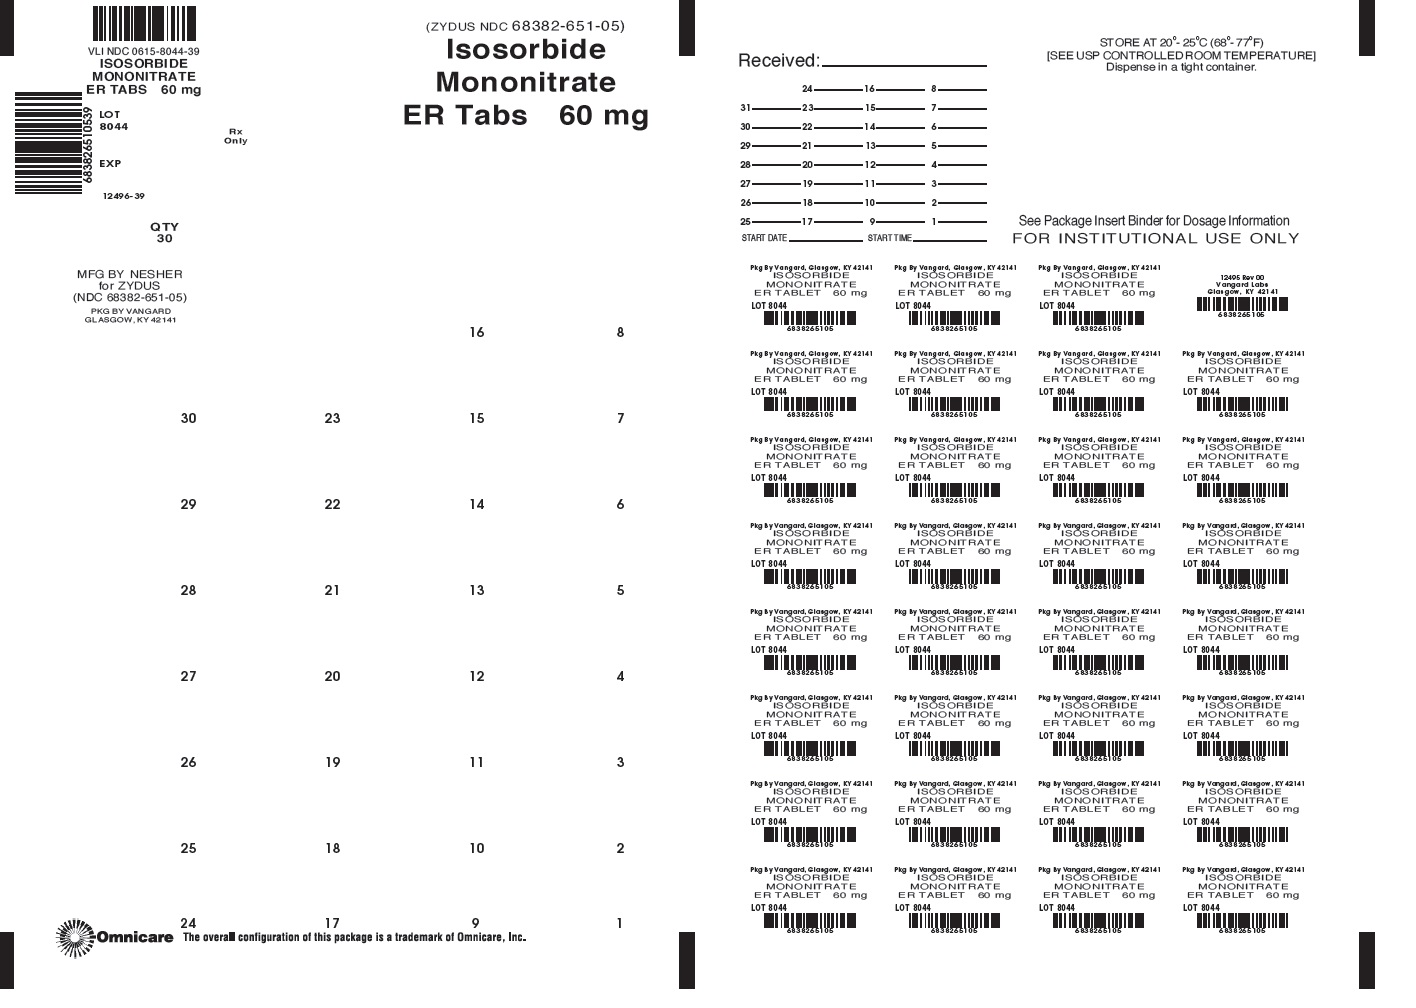 Isosorbide Monoitrate ER 60mg bingo card label